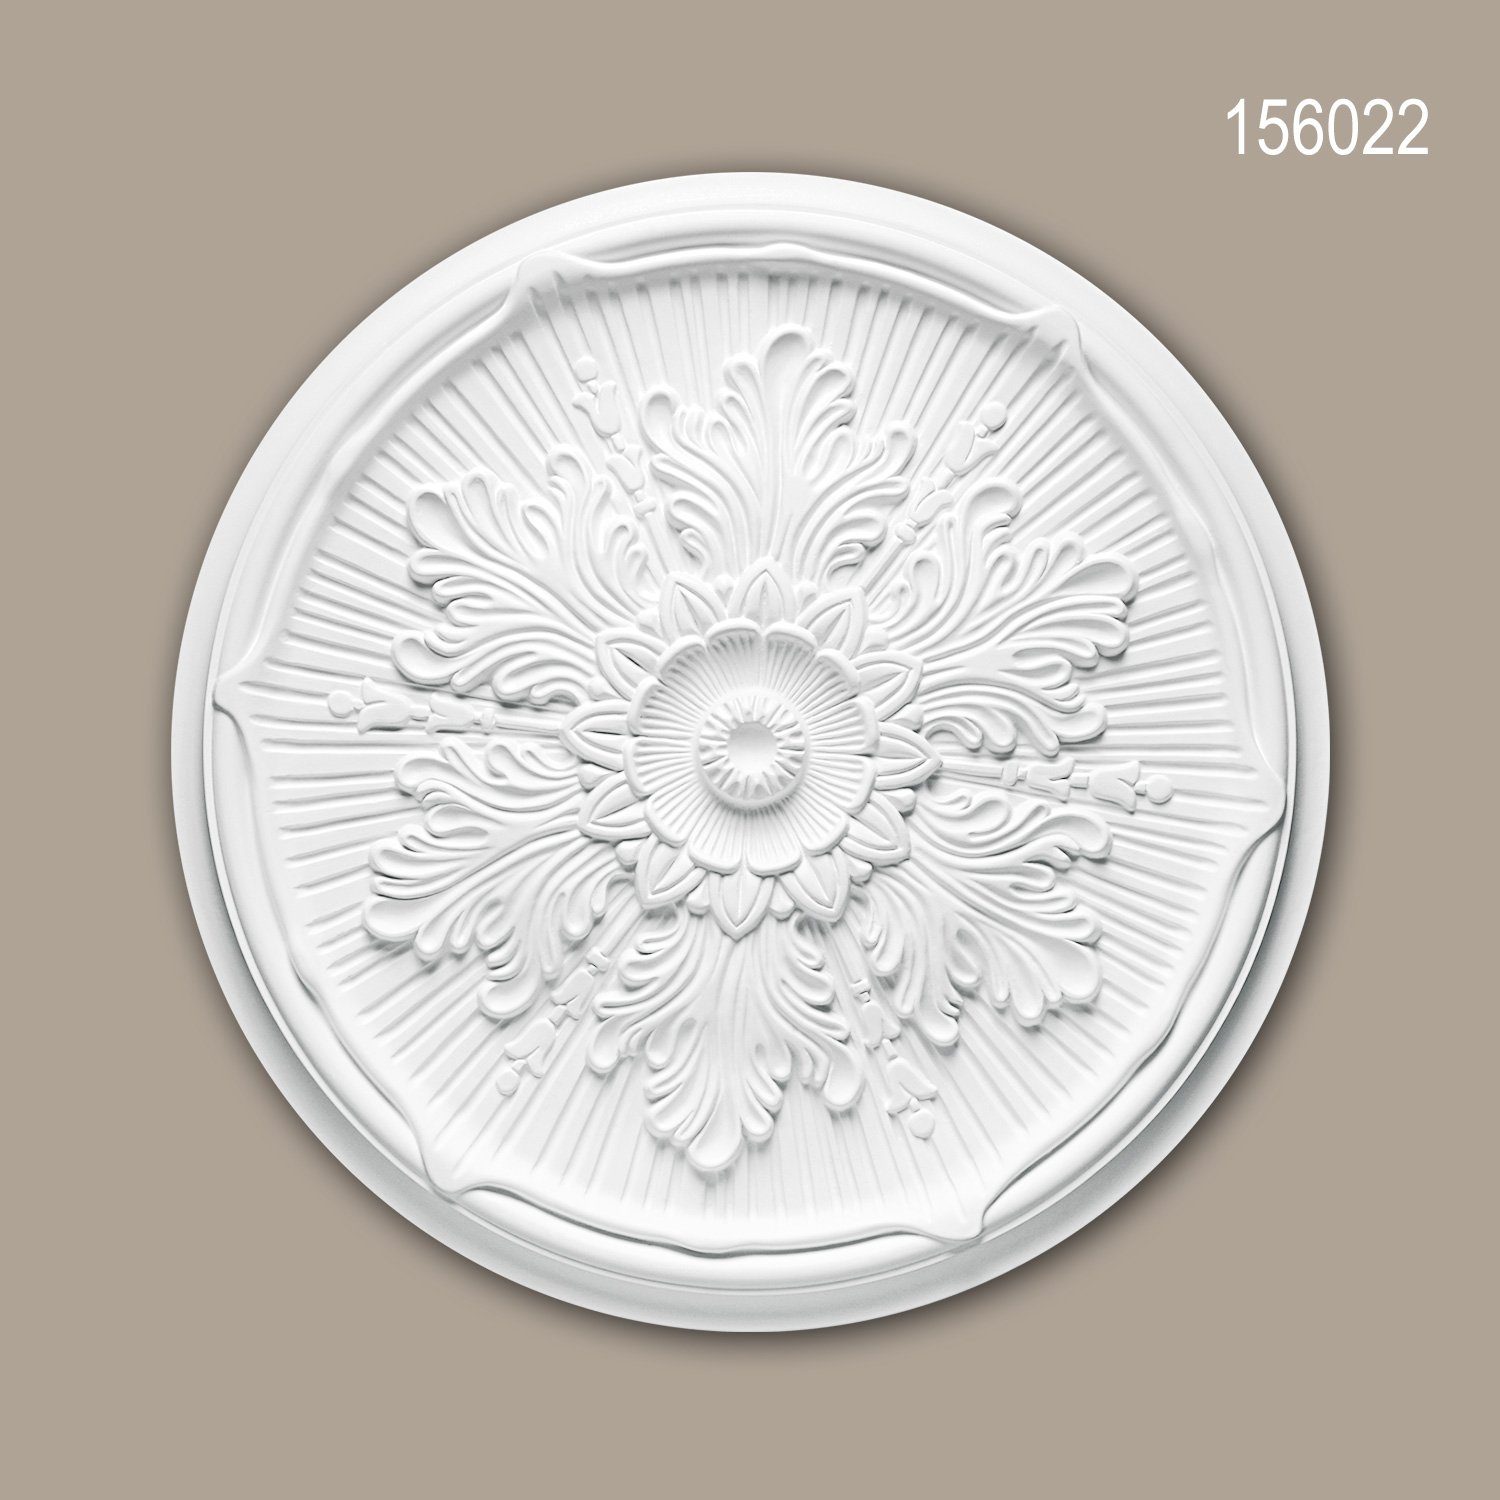 Zierelement, Neo-Renaissance Medallion, Stil: cm), vorgrundiert, weiß, Deckenrosette, 52,5 Decken-Rosette (Rosette, 1 Deckenelement, Stuckrosette, Profhome 156022 St., Durchmesser